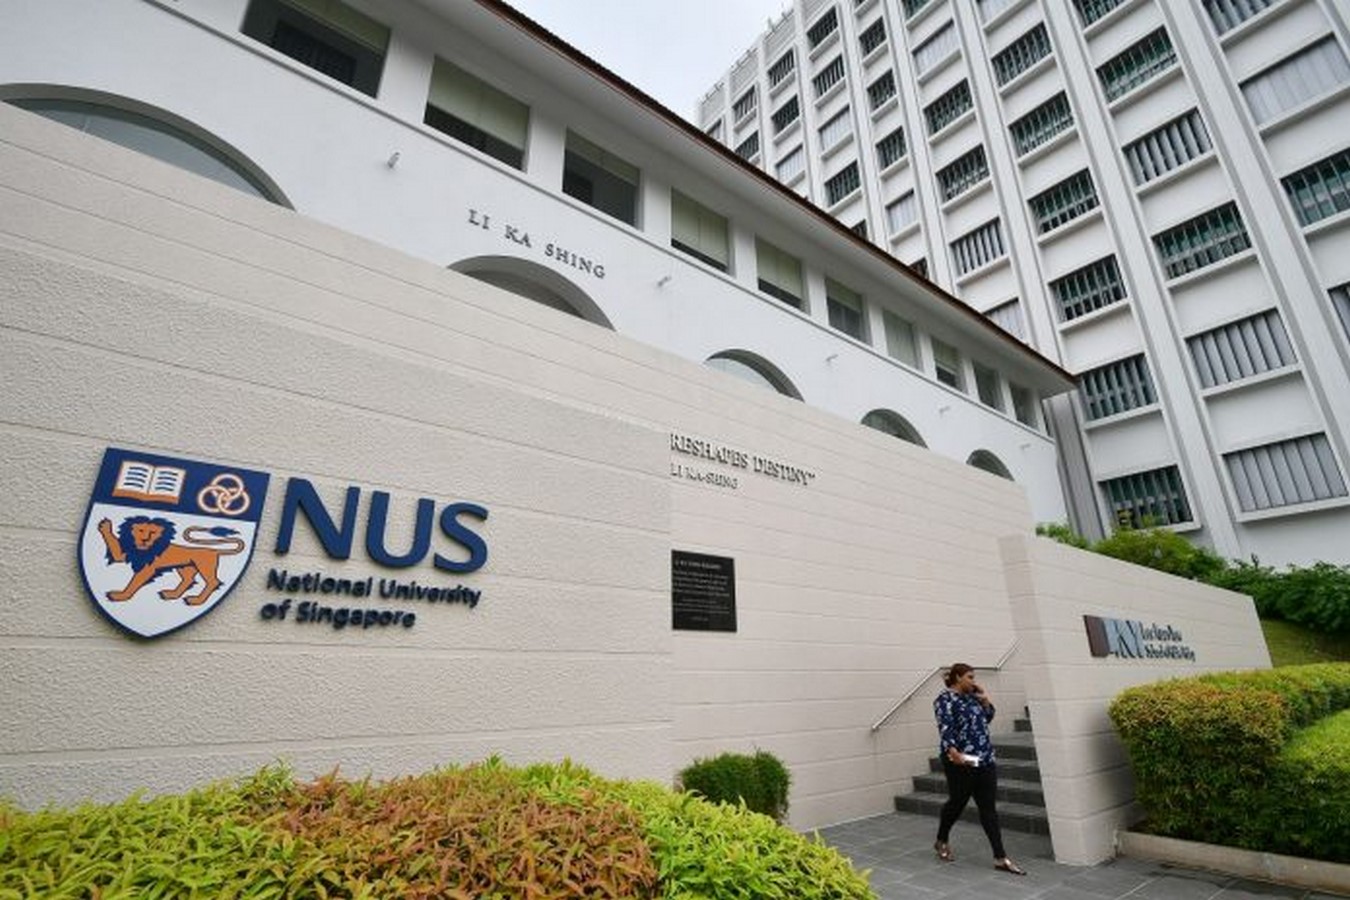 National University of Singapore - Sheet1